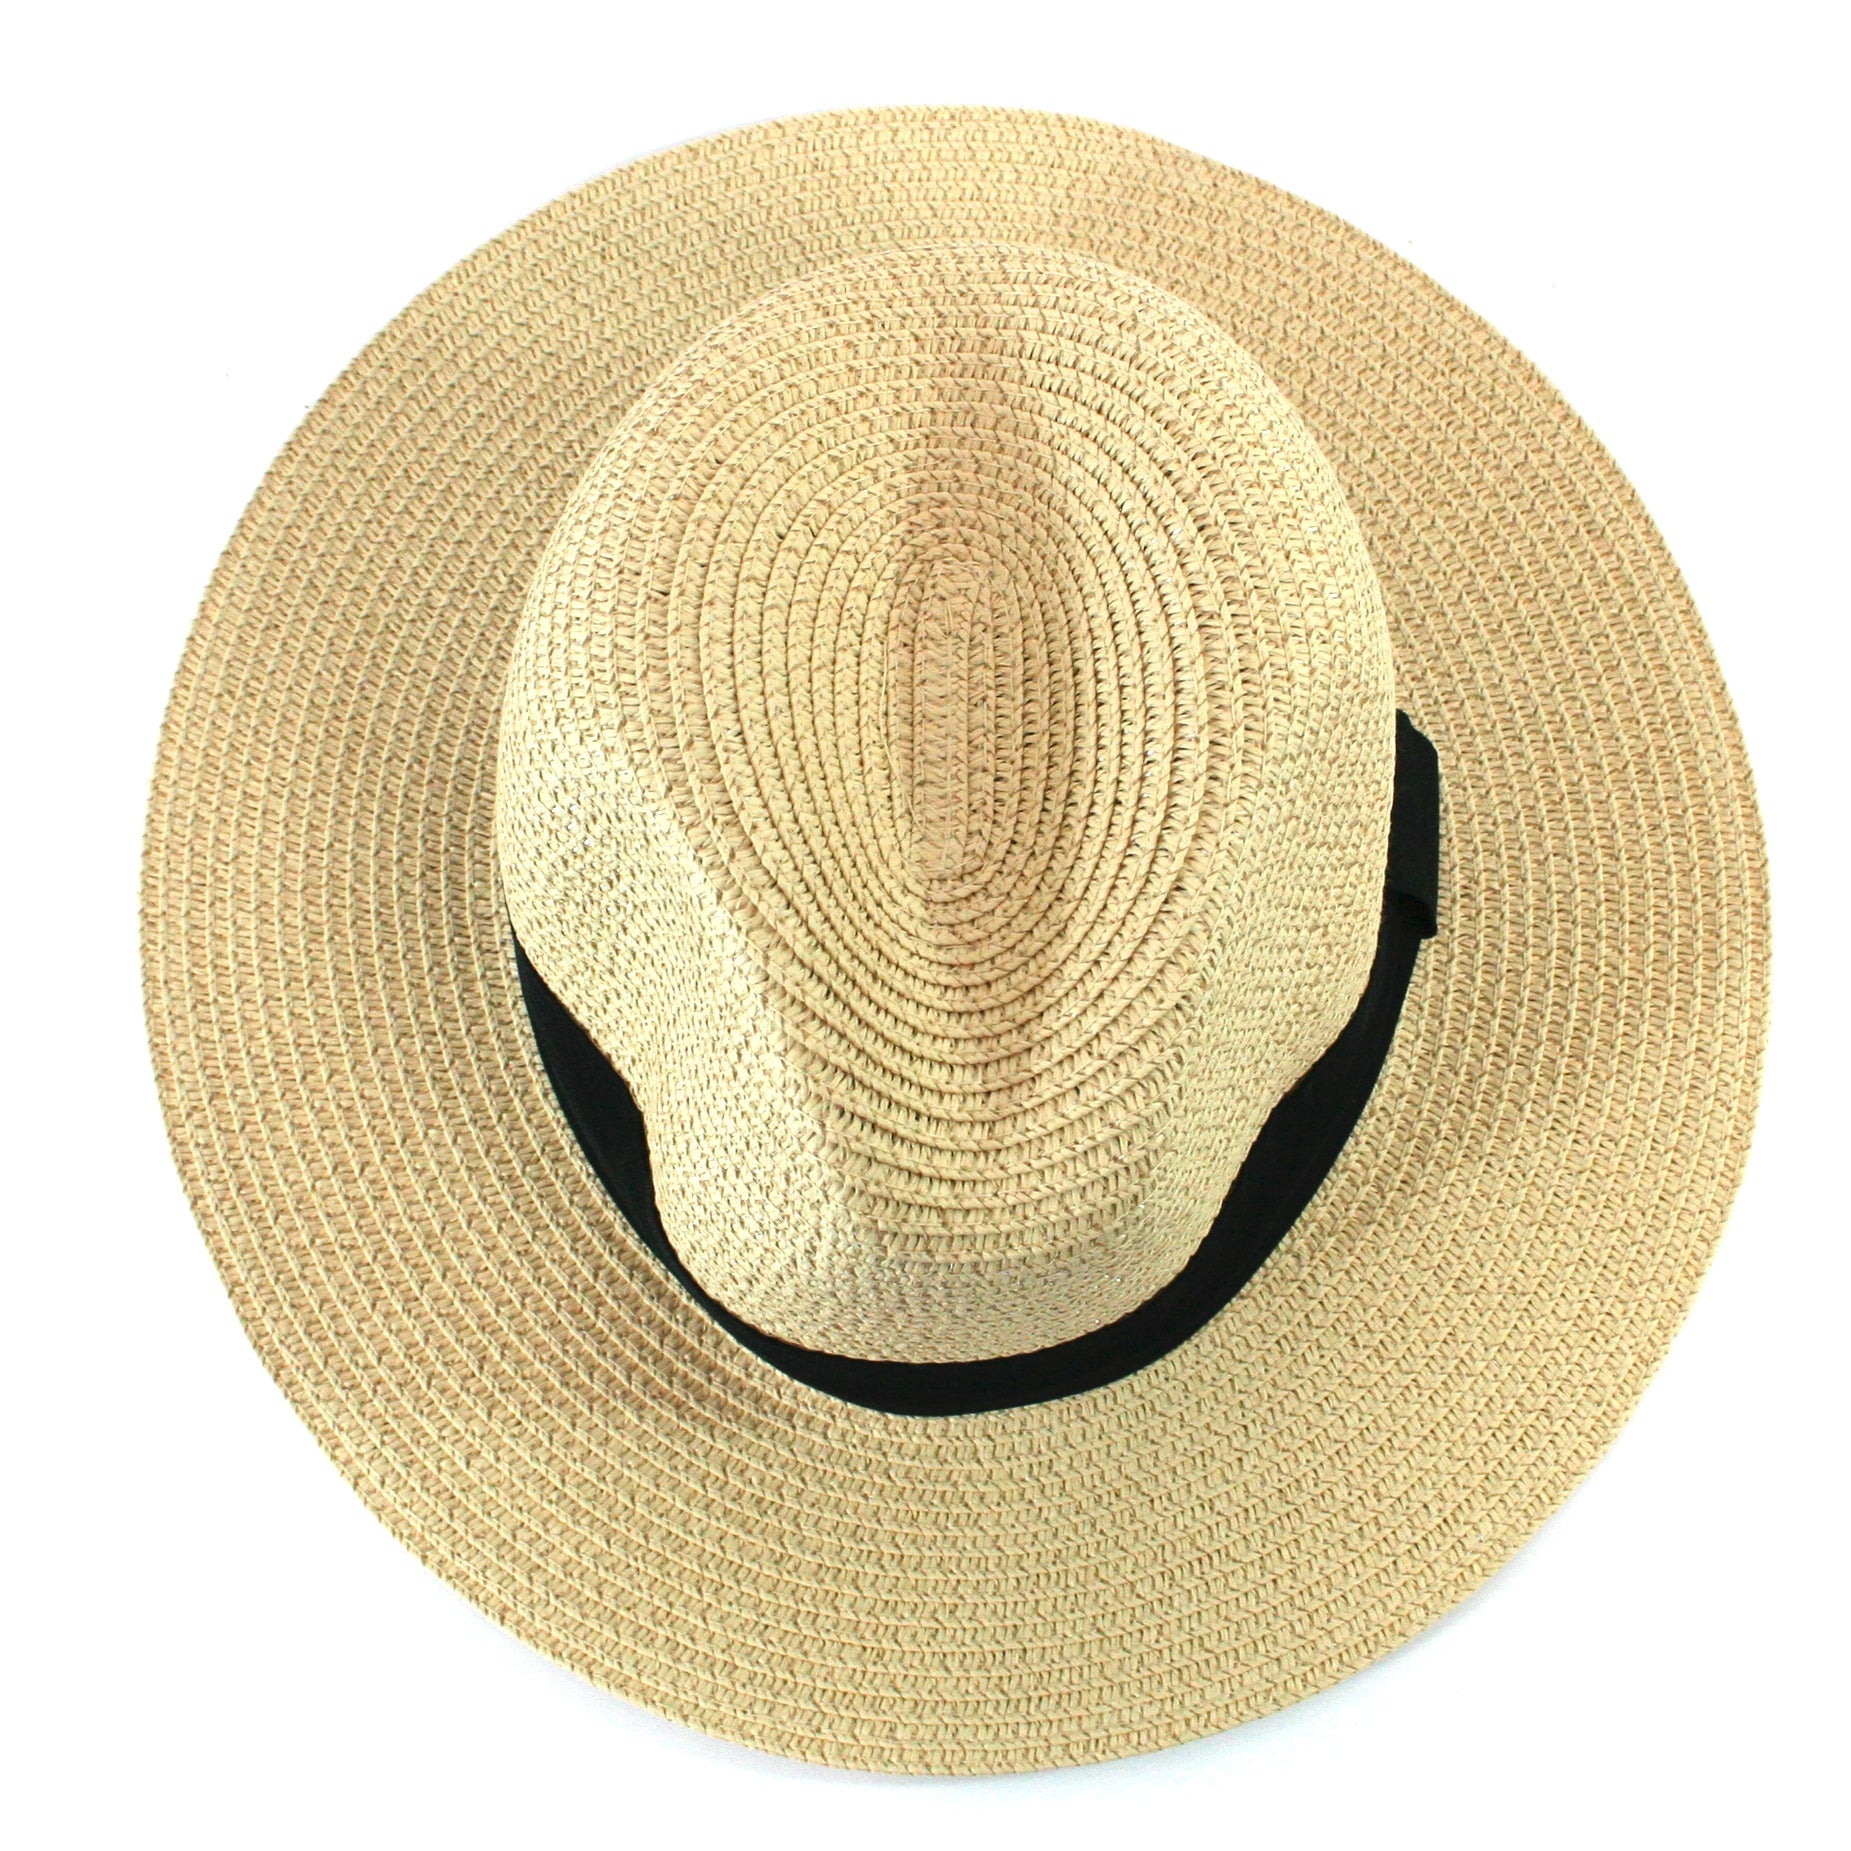 Chapeau de soleil pliable style Panama dans un sac – Moyen (61 cm)